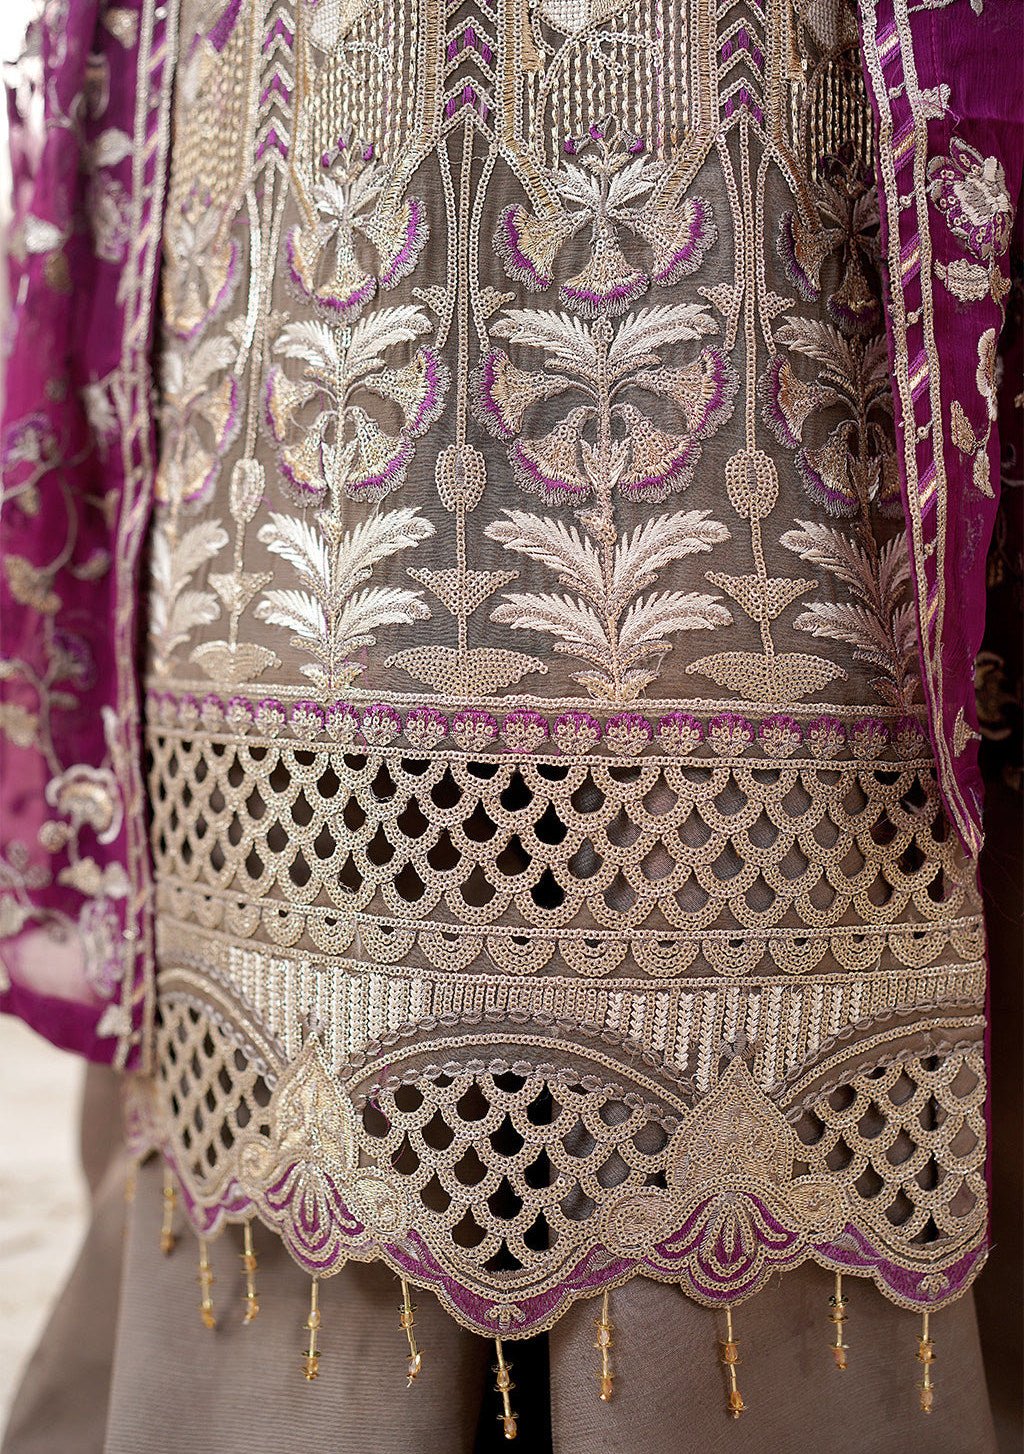 Maryam's Misaal Pakistani Luxury Chiffon Dress - db23398